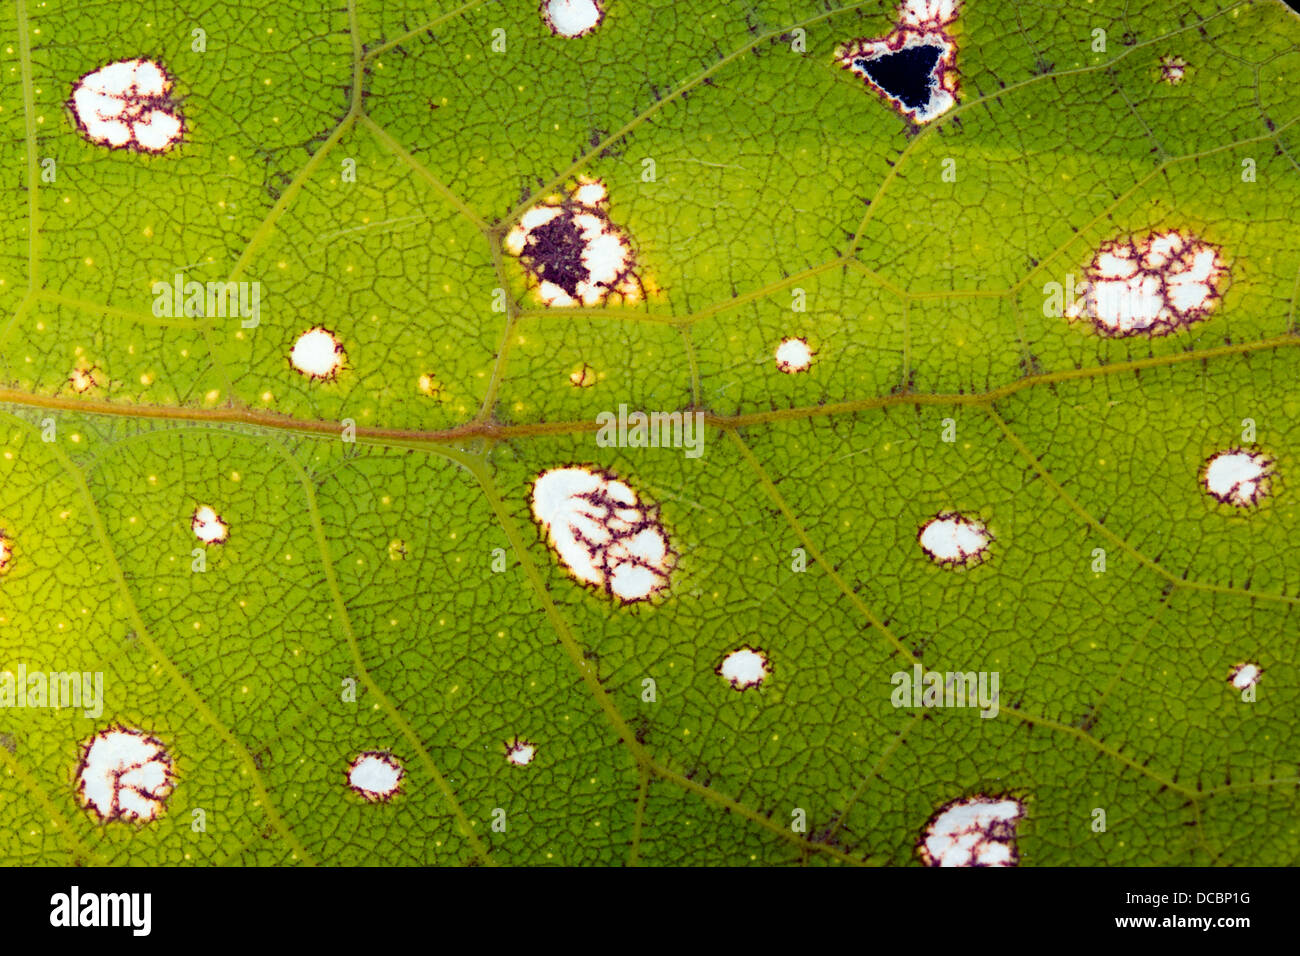 Muster auf dem Flügel ein grünes Blatt mimischen Grashuepfer, die auffallend der Aderung eines echten Blattes, Ecuador ähnelt. Stockfoto